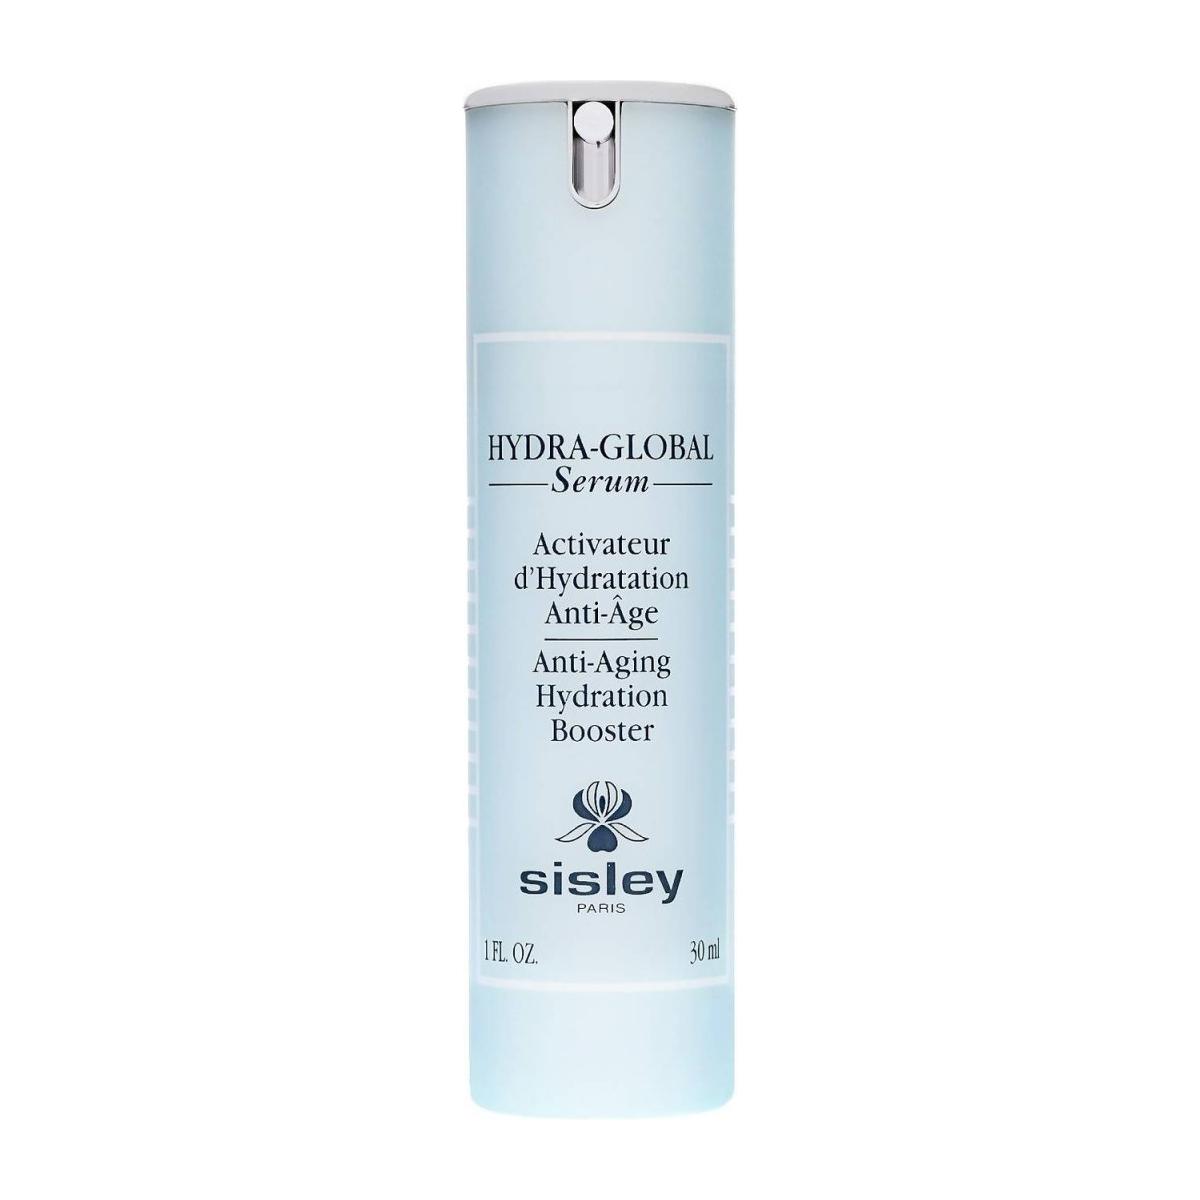 Sisley Hydra-Global Serum Anti-Aging Hydration Booster 30ml - Glam Global UK